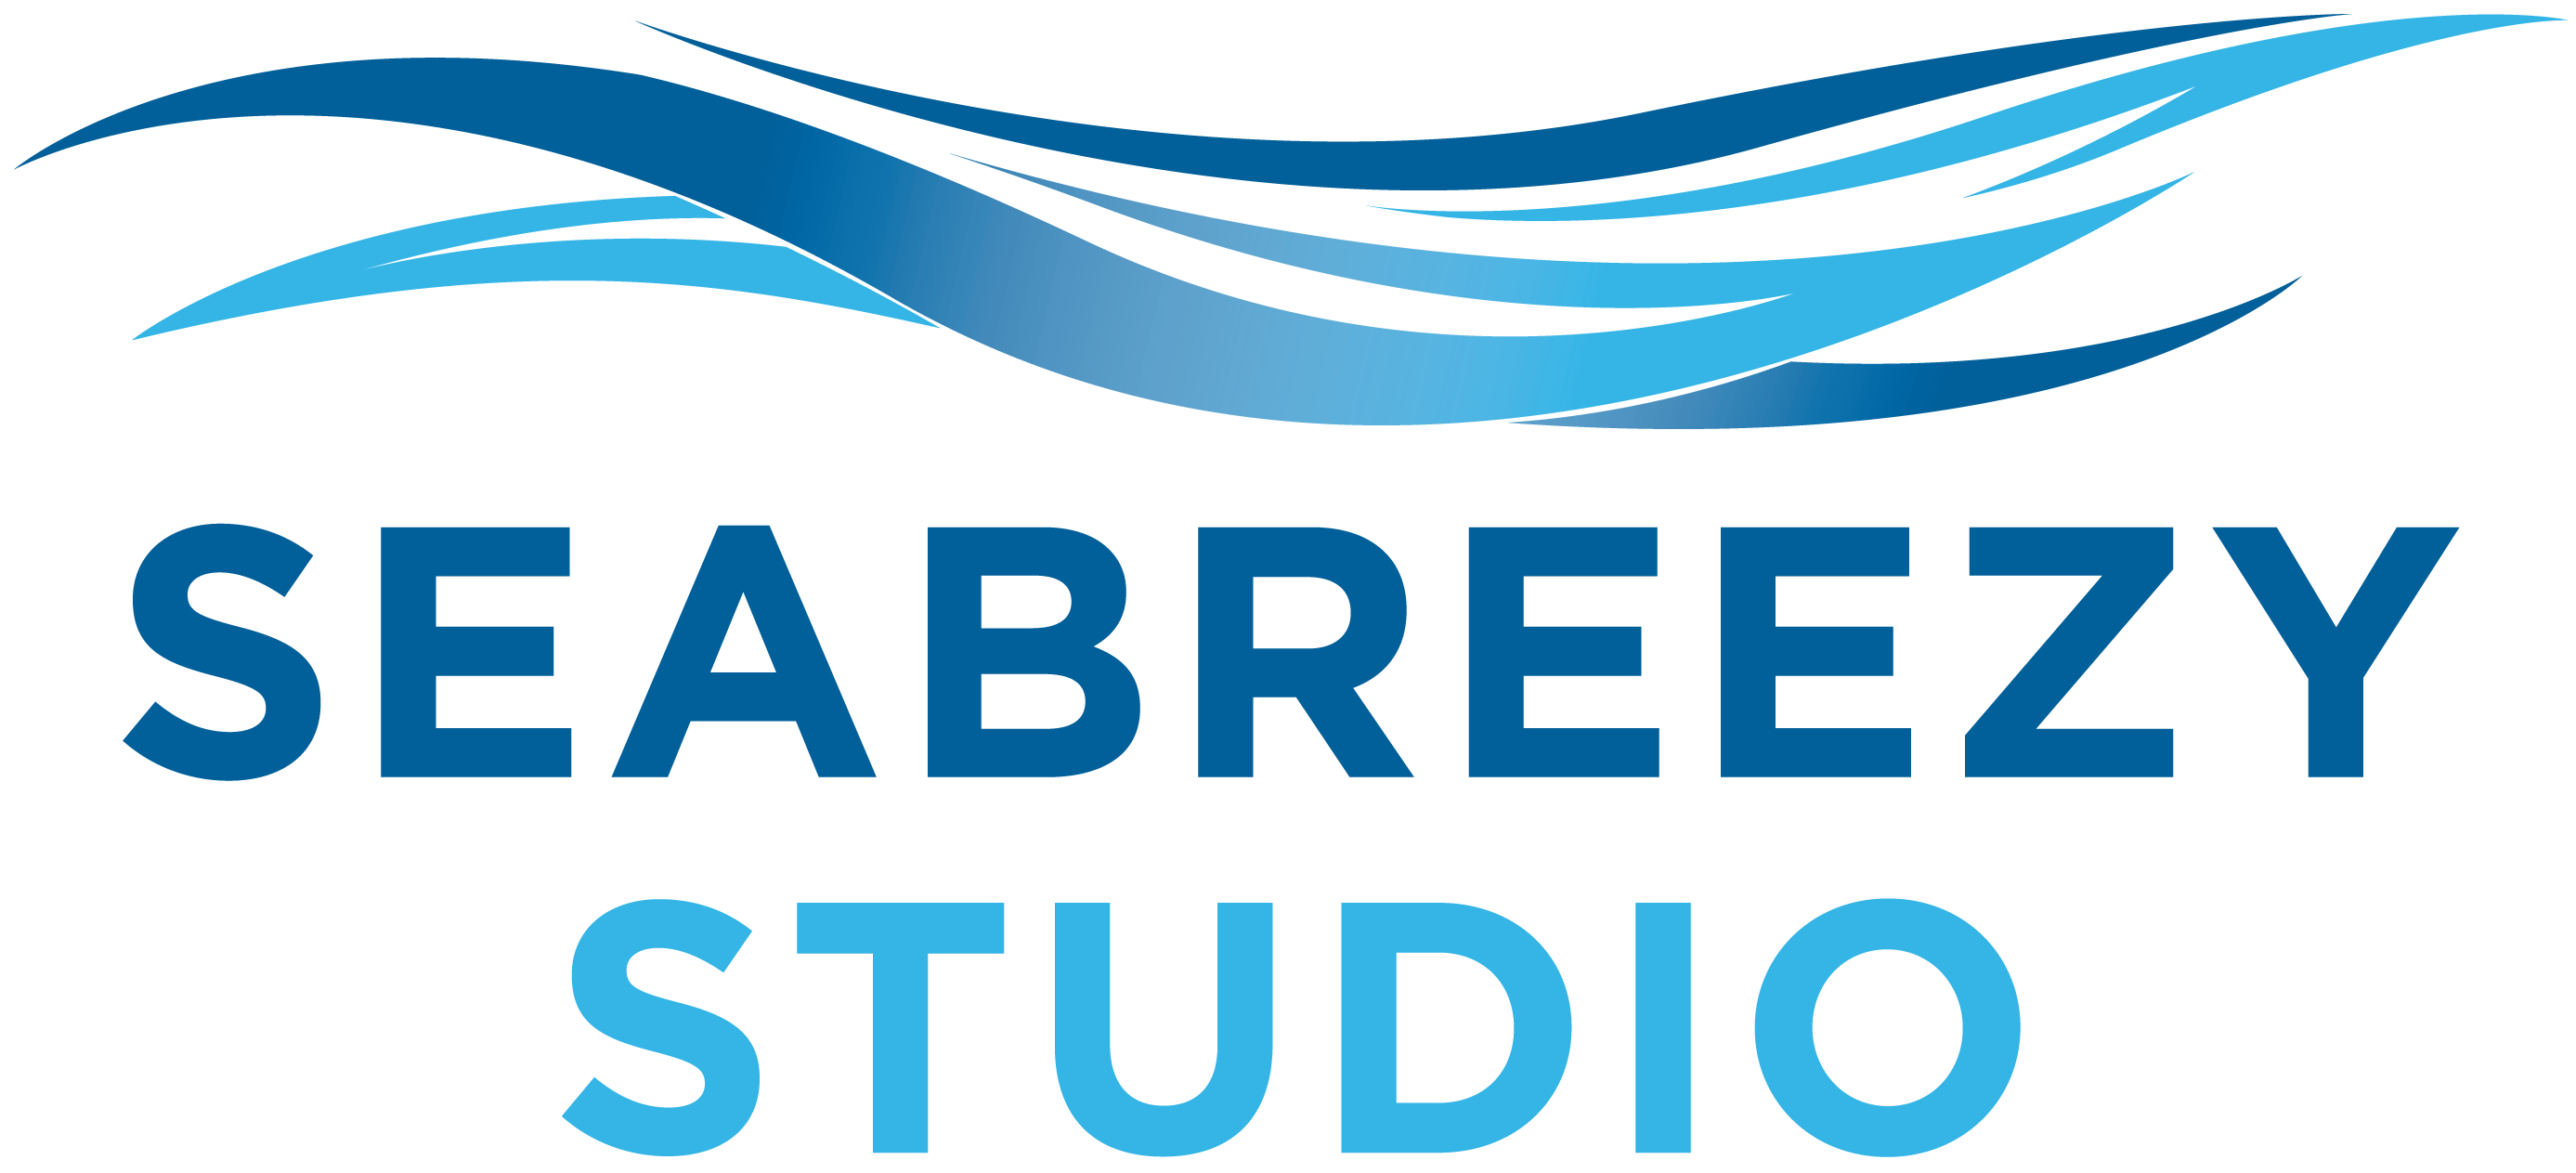 Seabreezy Studio